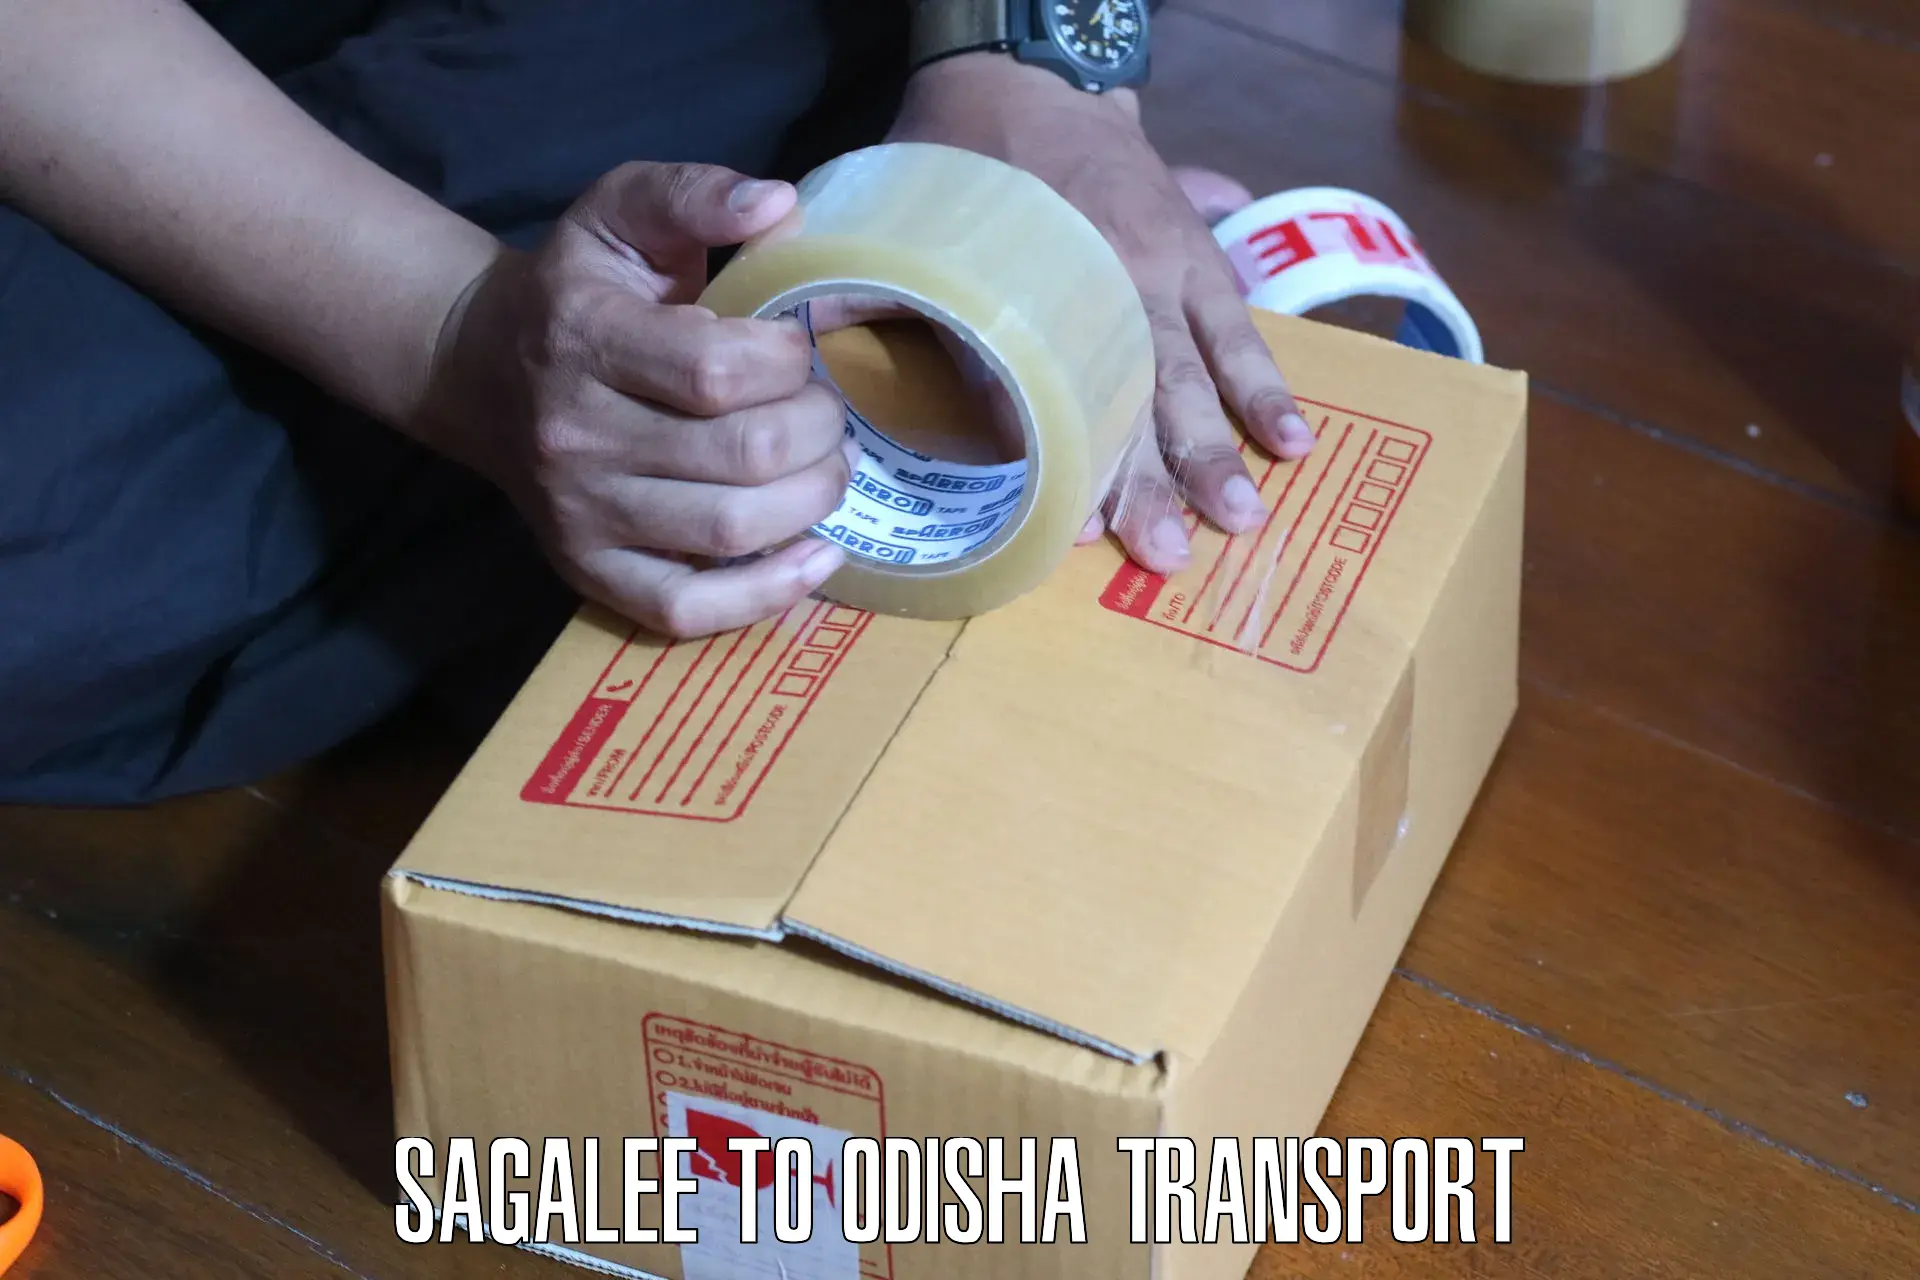 Shipping partner Sagalee to Sambalpur